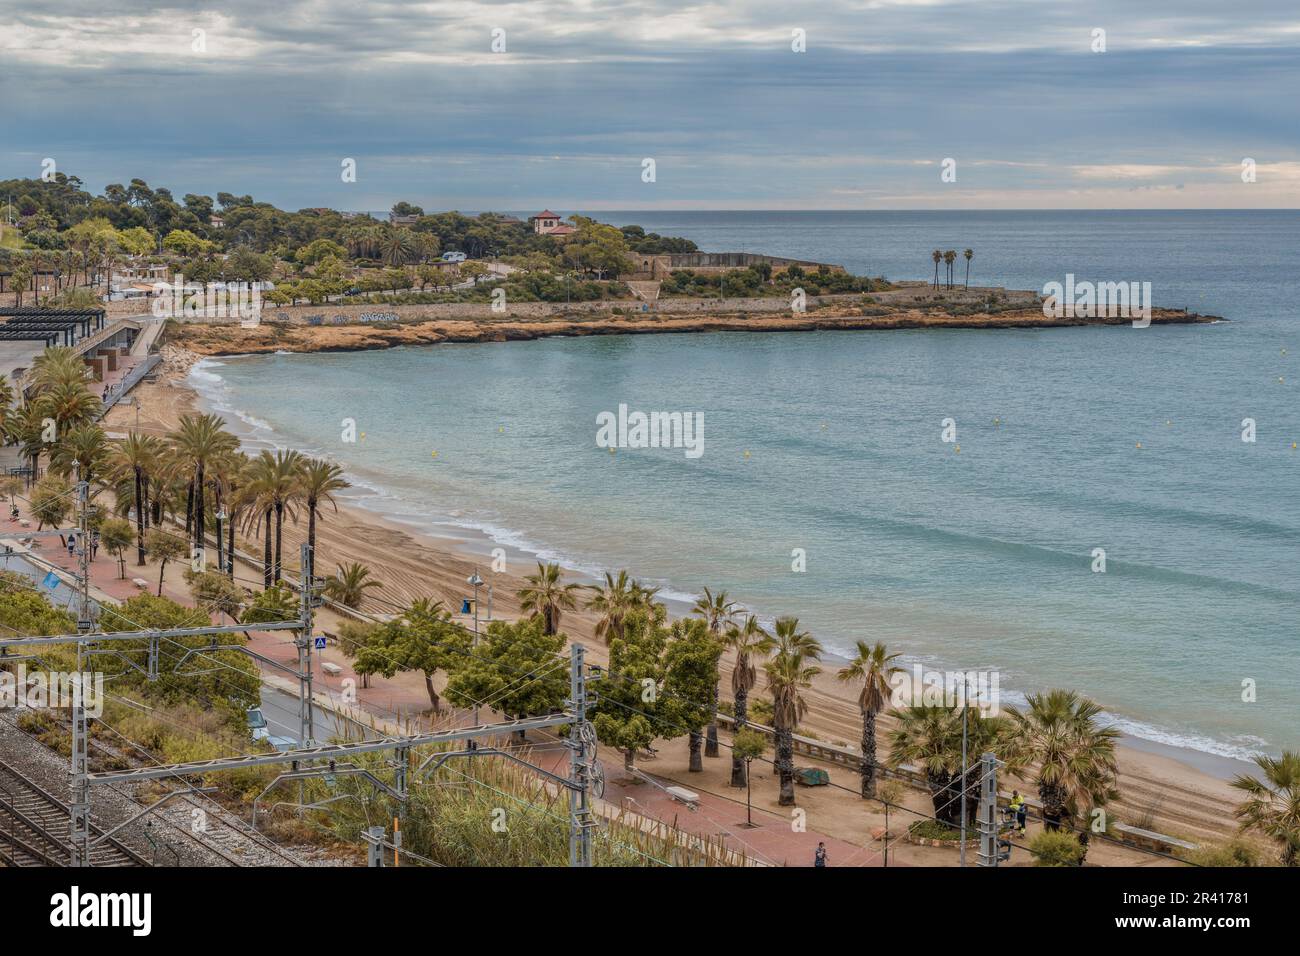 Platja del Miracle-Playa El Milagro die Promenade, die Straße und die Bahngleise mit dem Hafen der Stadt Tarragona in der Gemeinde Katalonien. Stockfoto